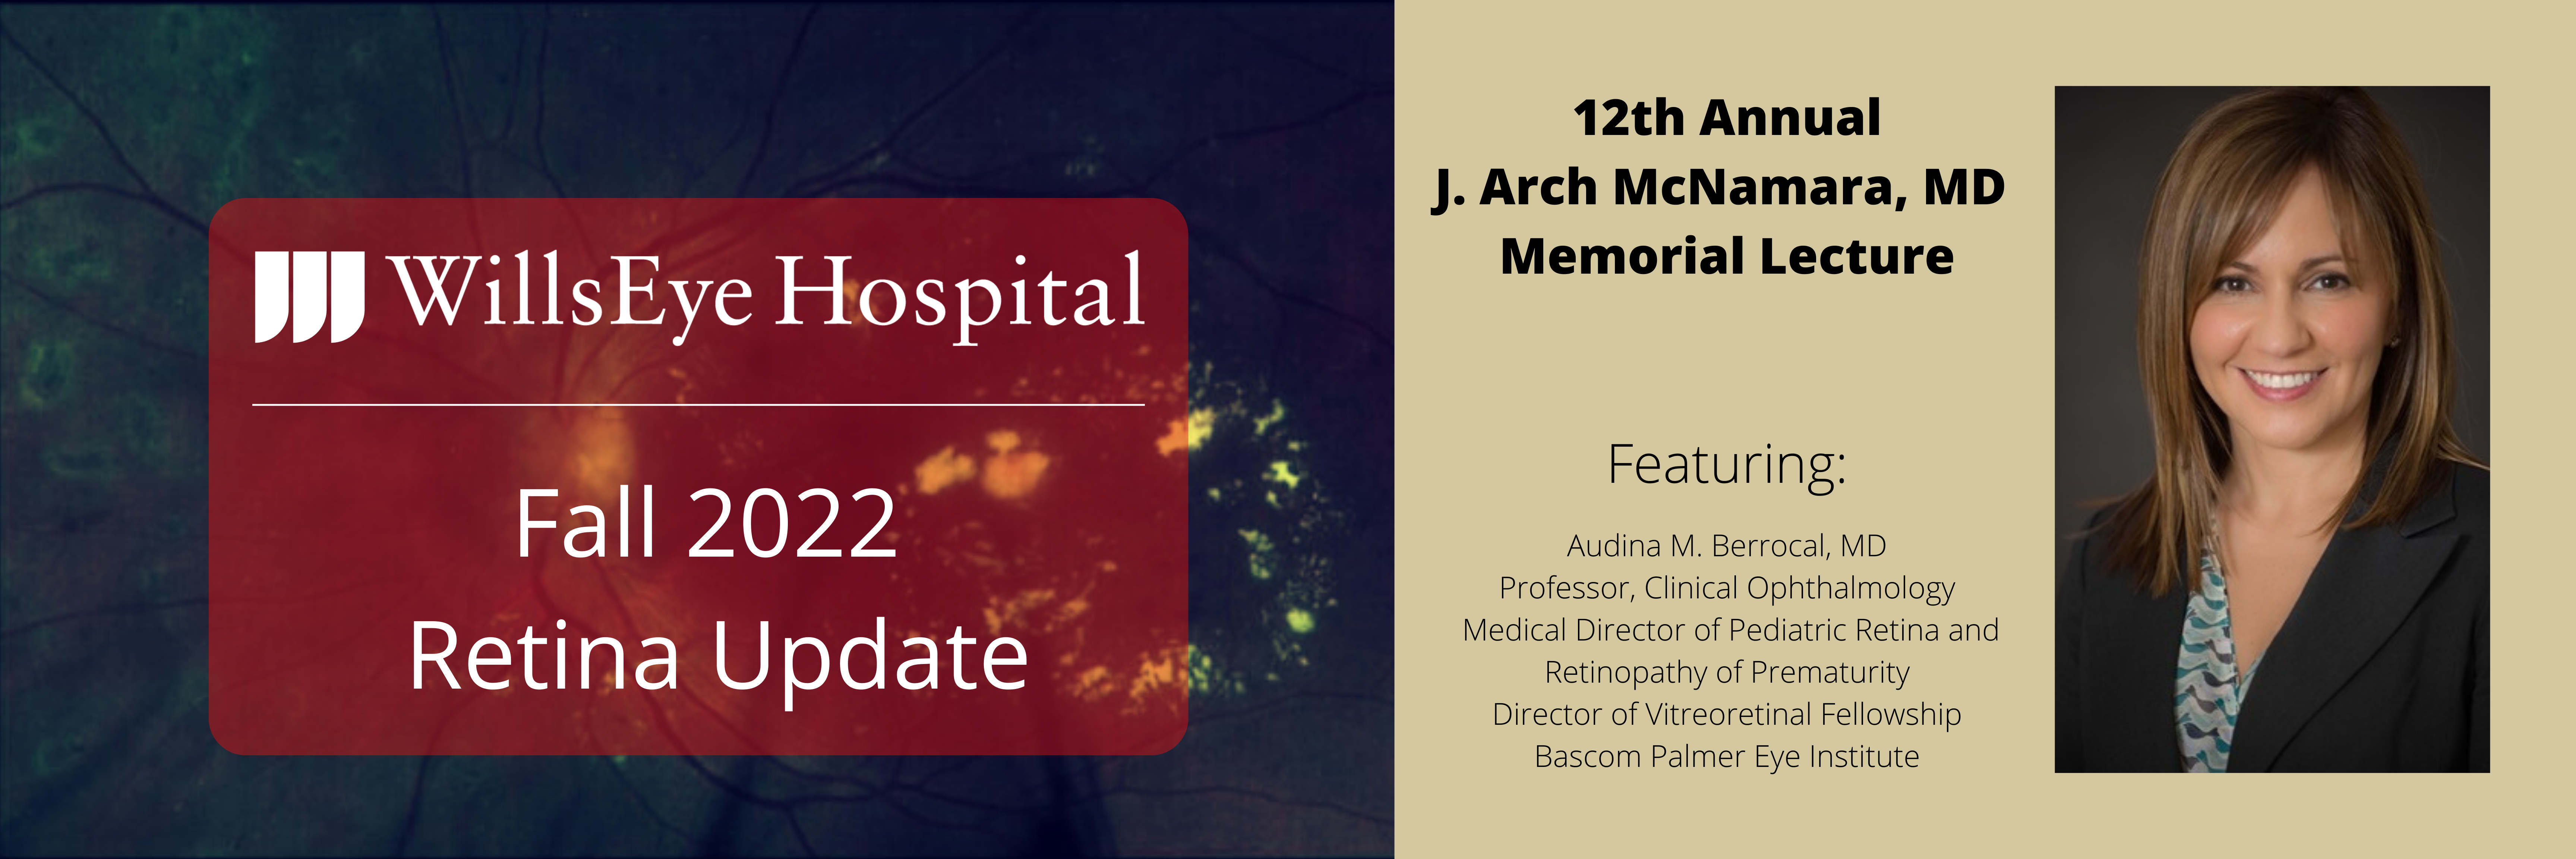 Retina Update - Feat. 12th Annual J. Arch McNamara, MD Memorial Lecture (12/3/2022 @ 8 a.m. ET) Banner